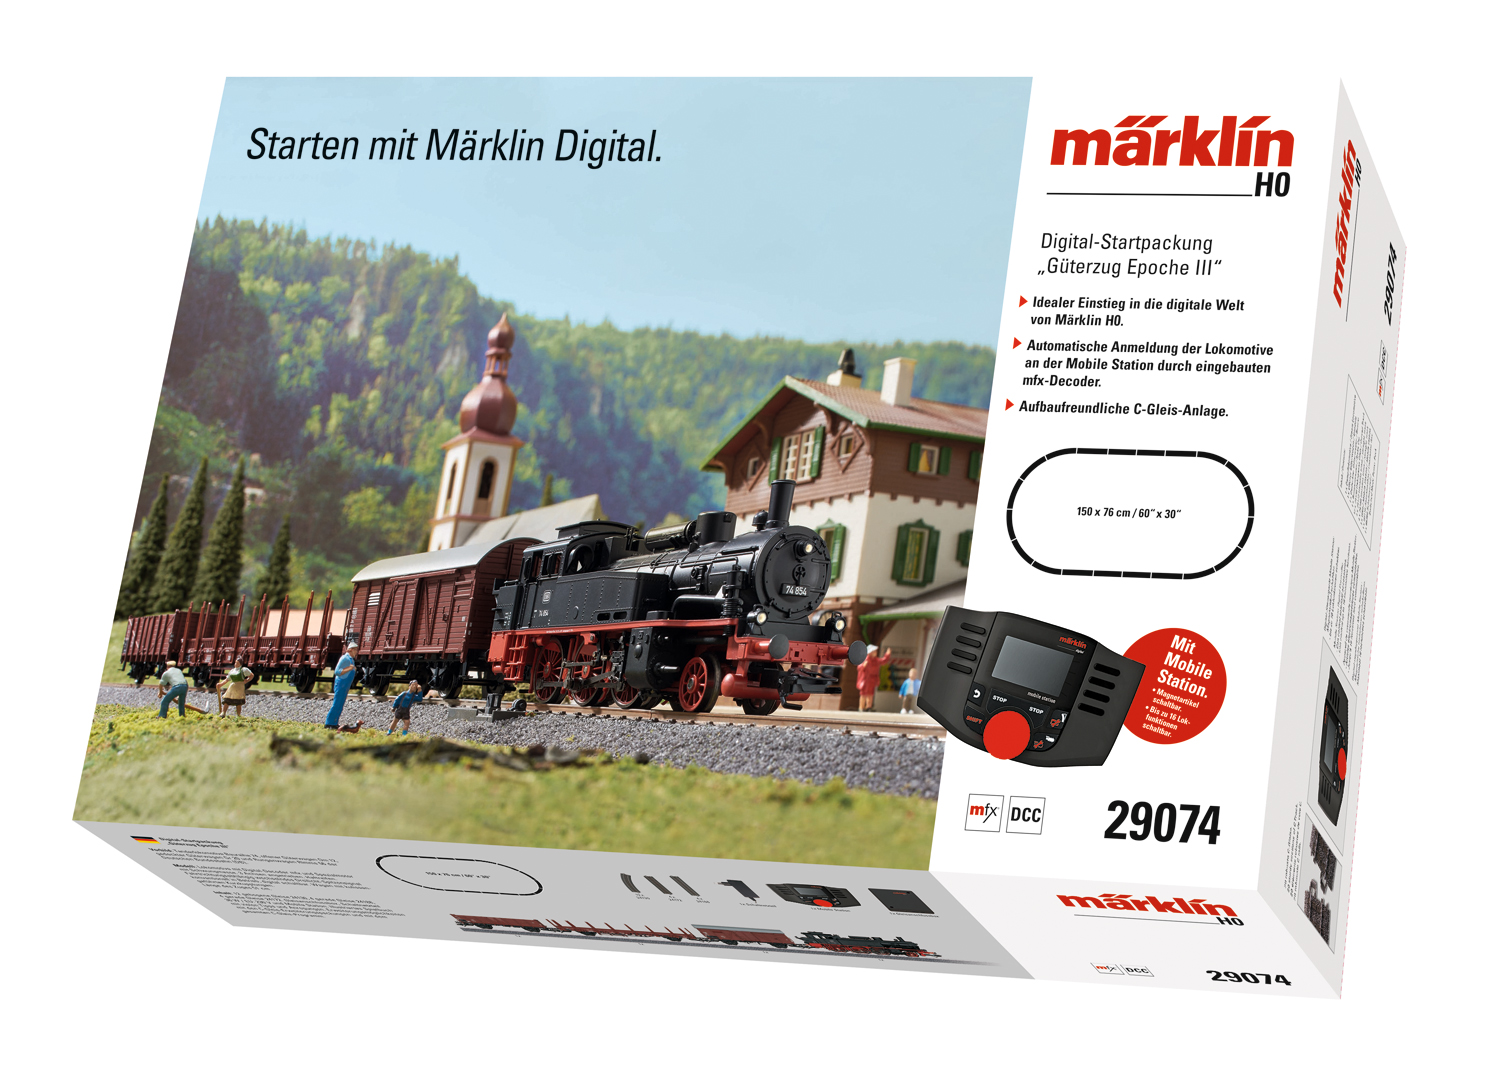 Digital-Startpackung m.BR 74 "Start-Up"-Serie, mit Mobile Station 2